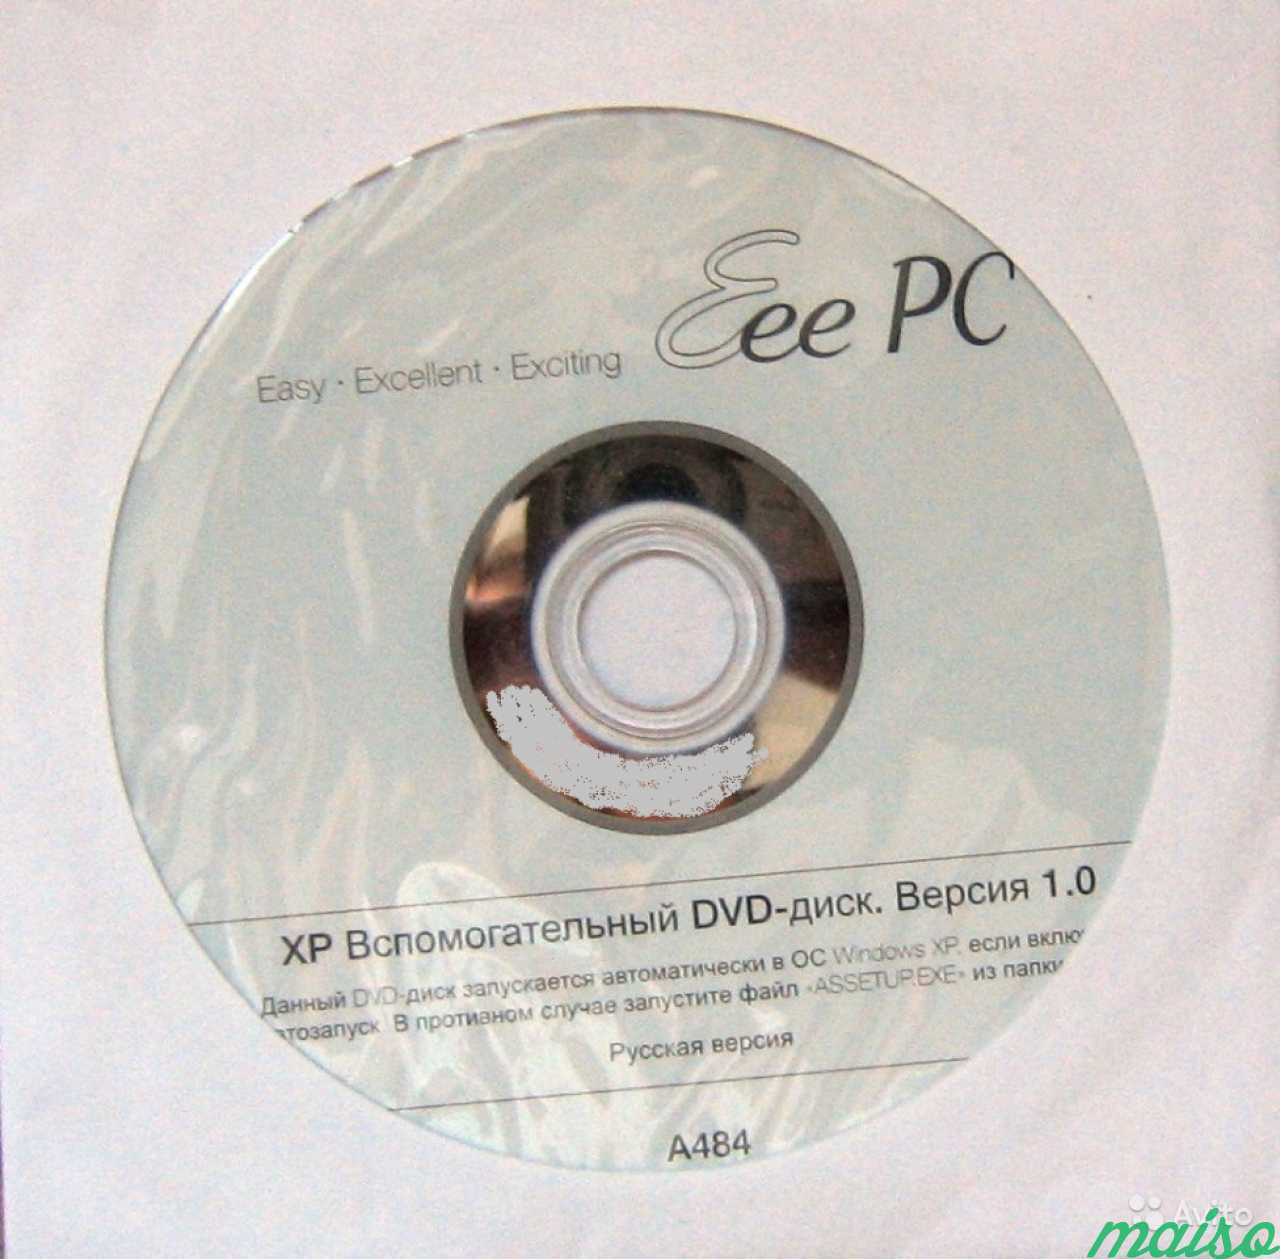 Рекавери DVD c Windows XP от нетбука asus 901-1000 в Санкт-Петербурге. Фото 1